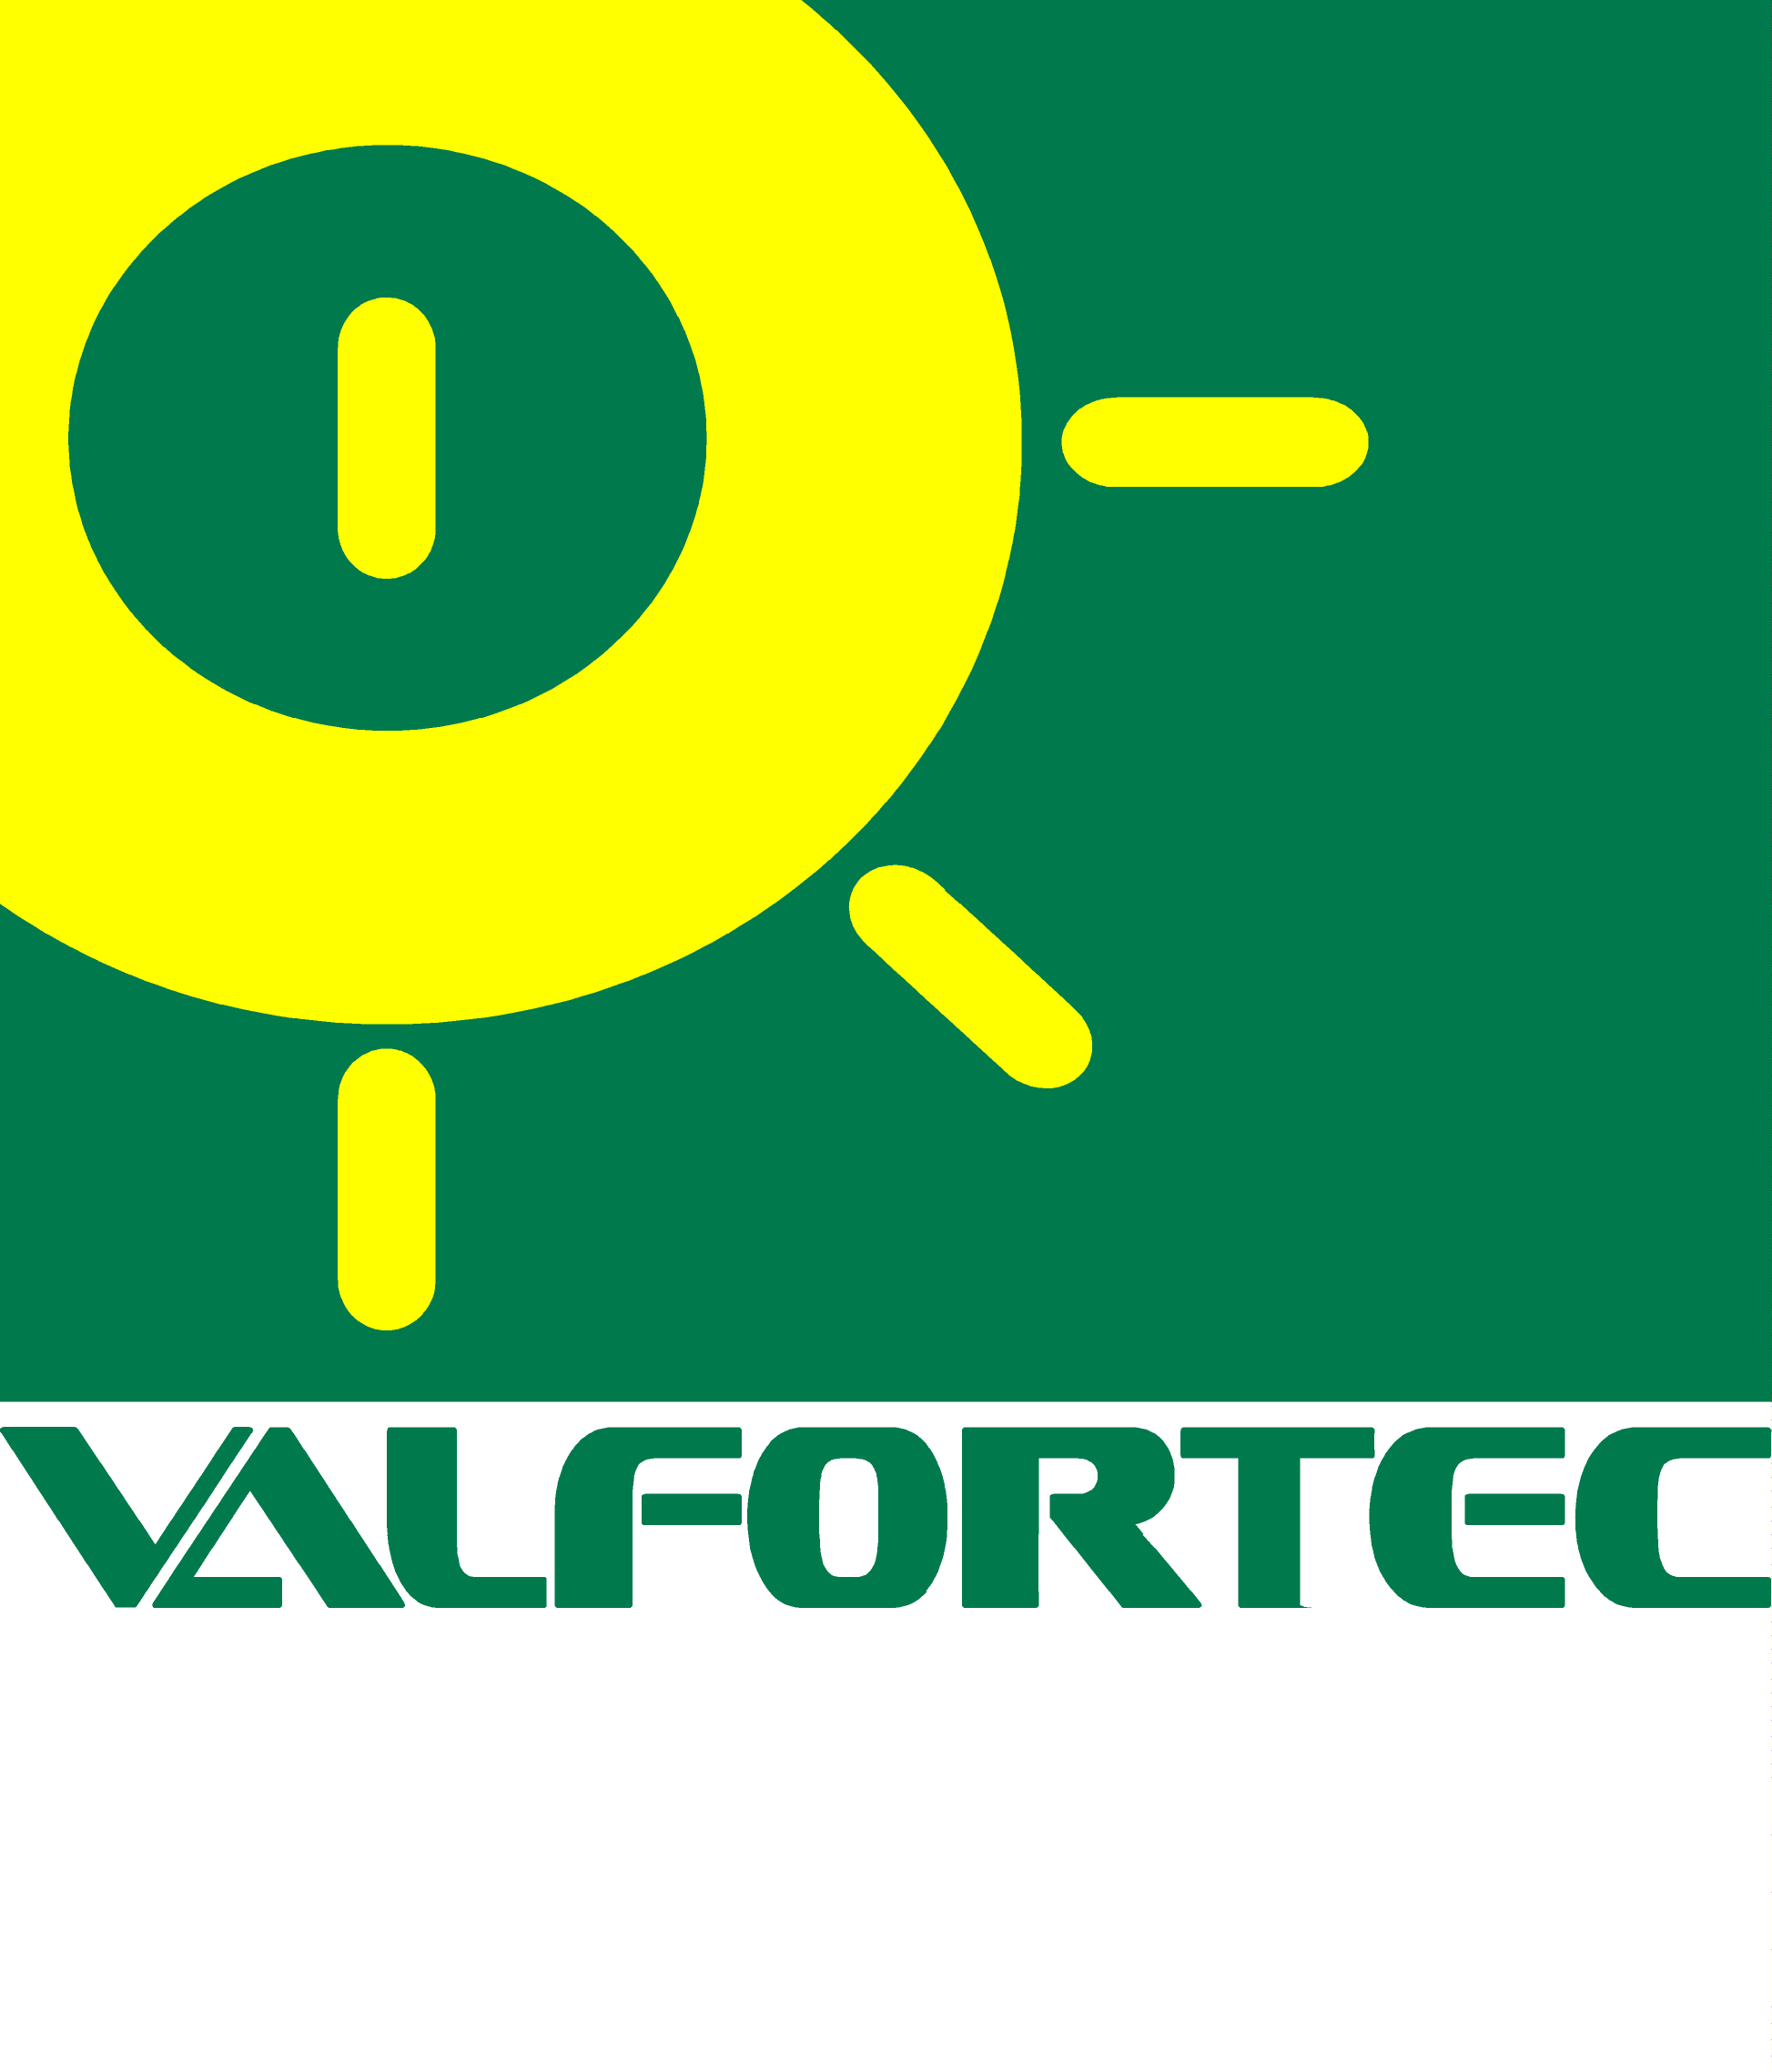 VALFORTEC